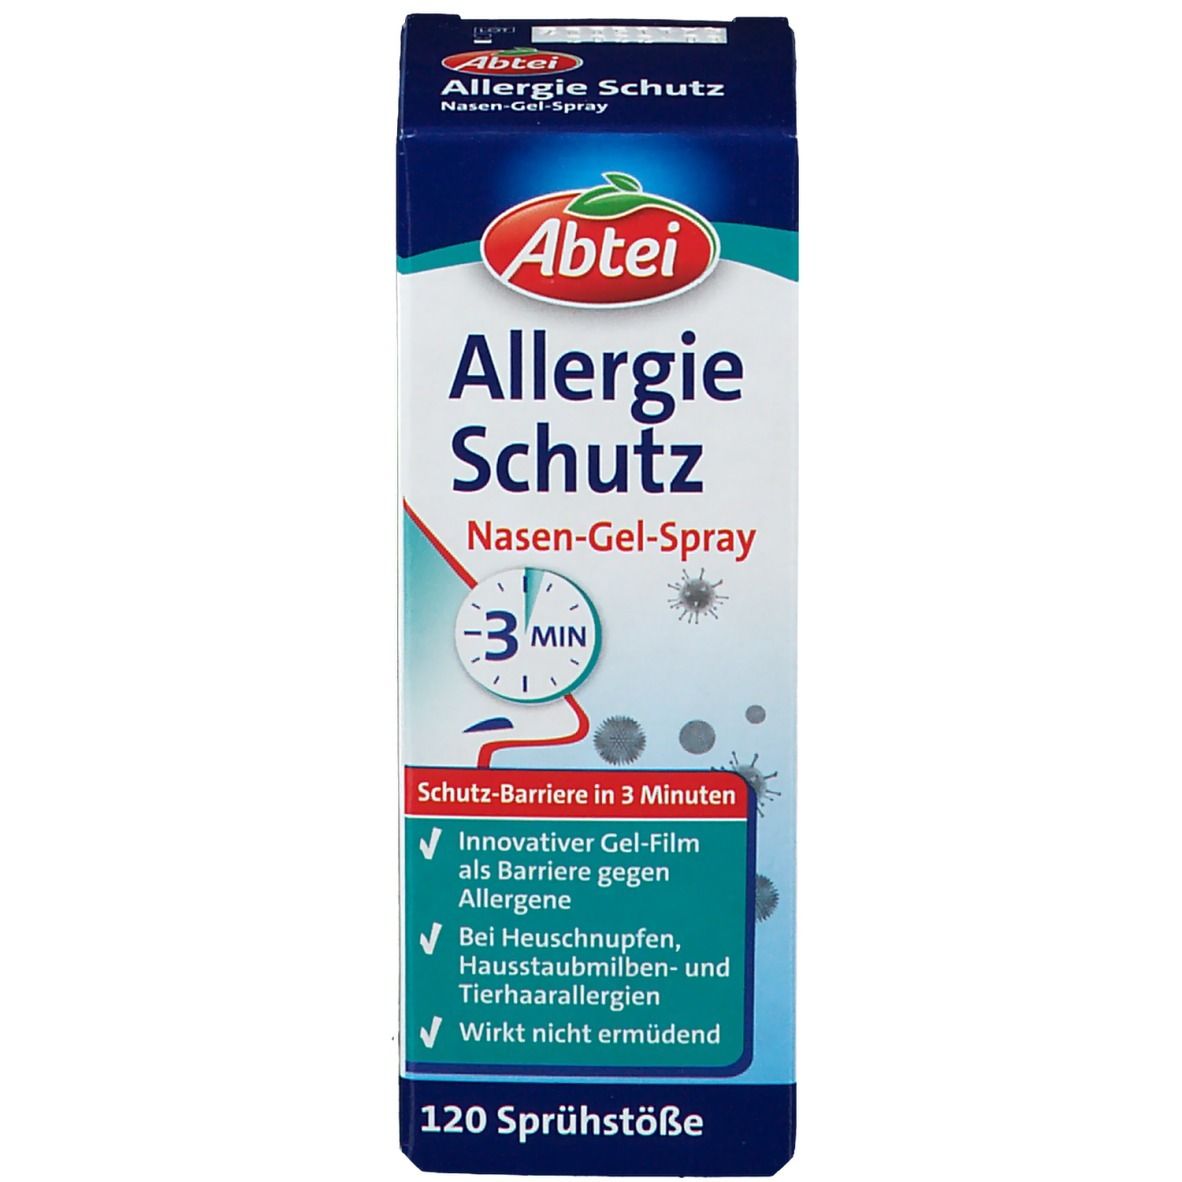 Abtei Allergie Schutz Nasen-Gel-Spray